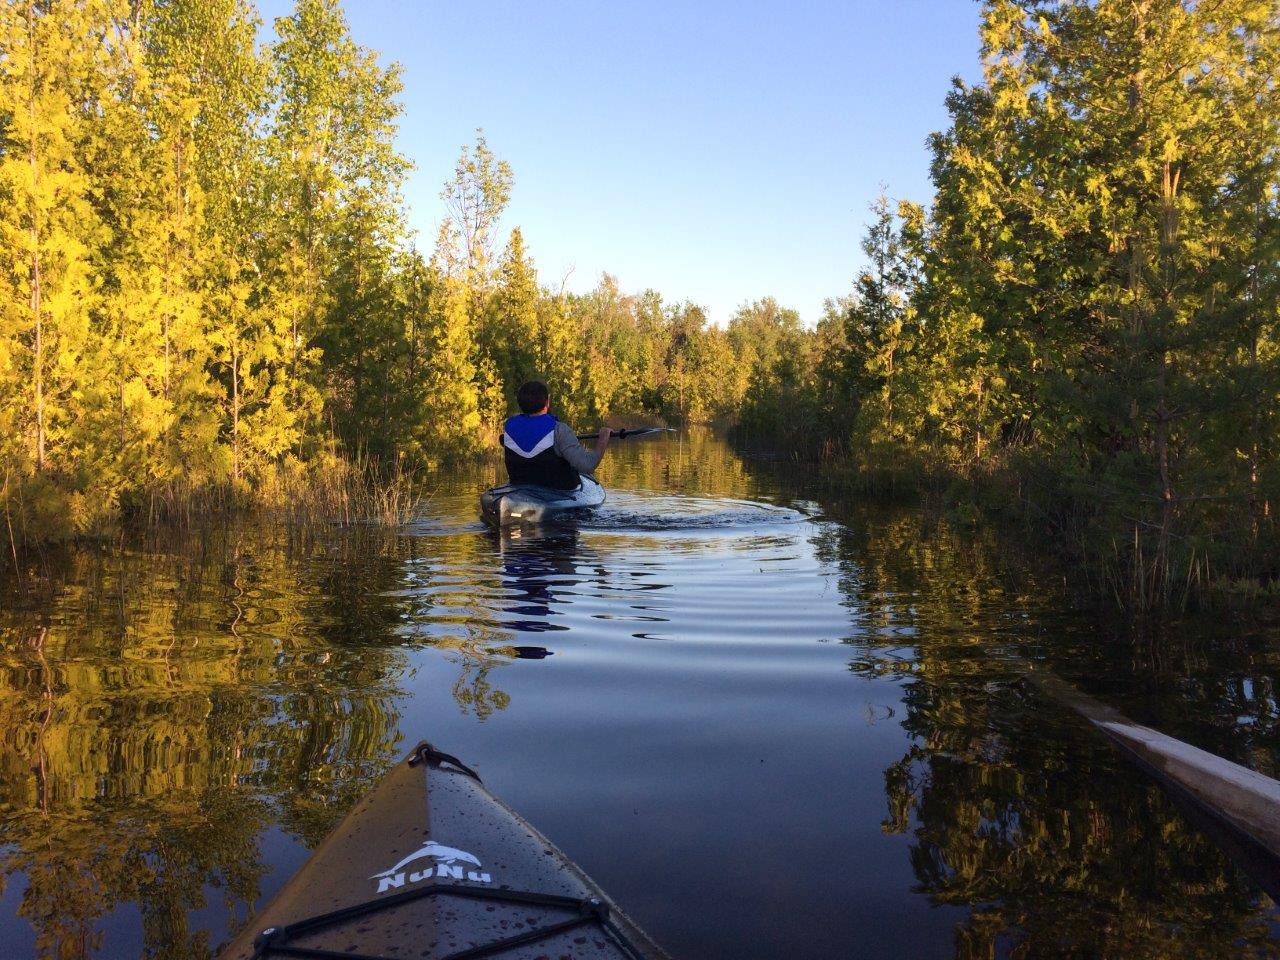 Man kayaking on water near trees